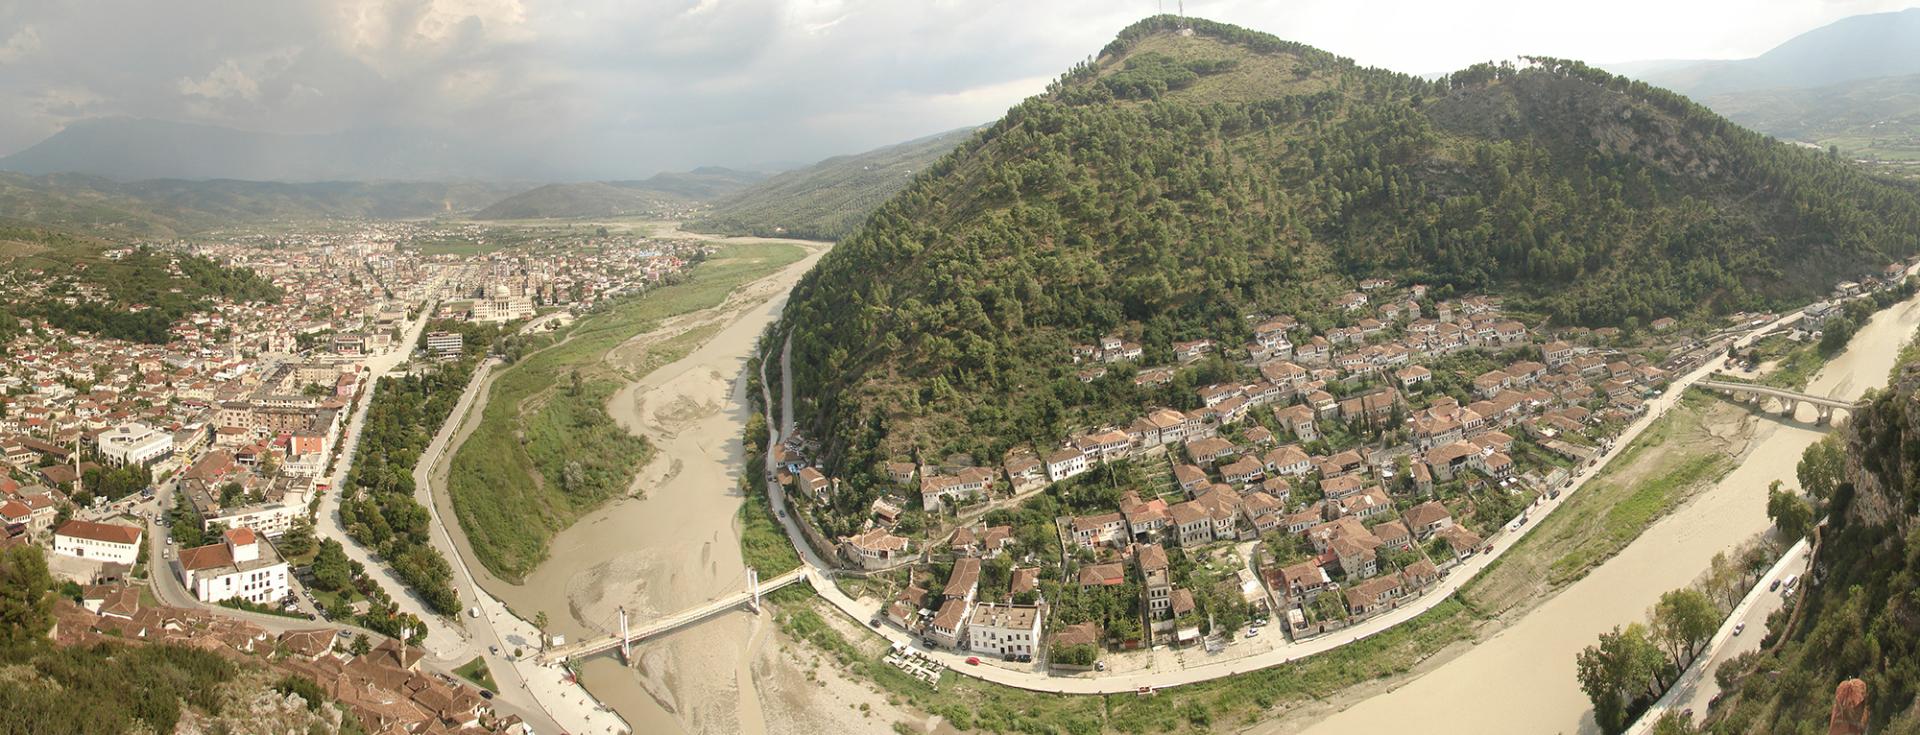 Berat Stadt der tausend Fenster in Albanien